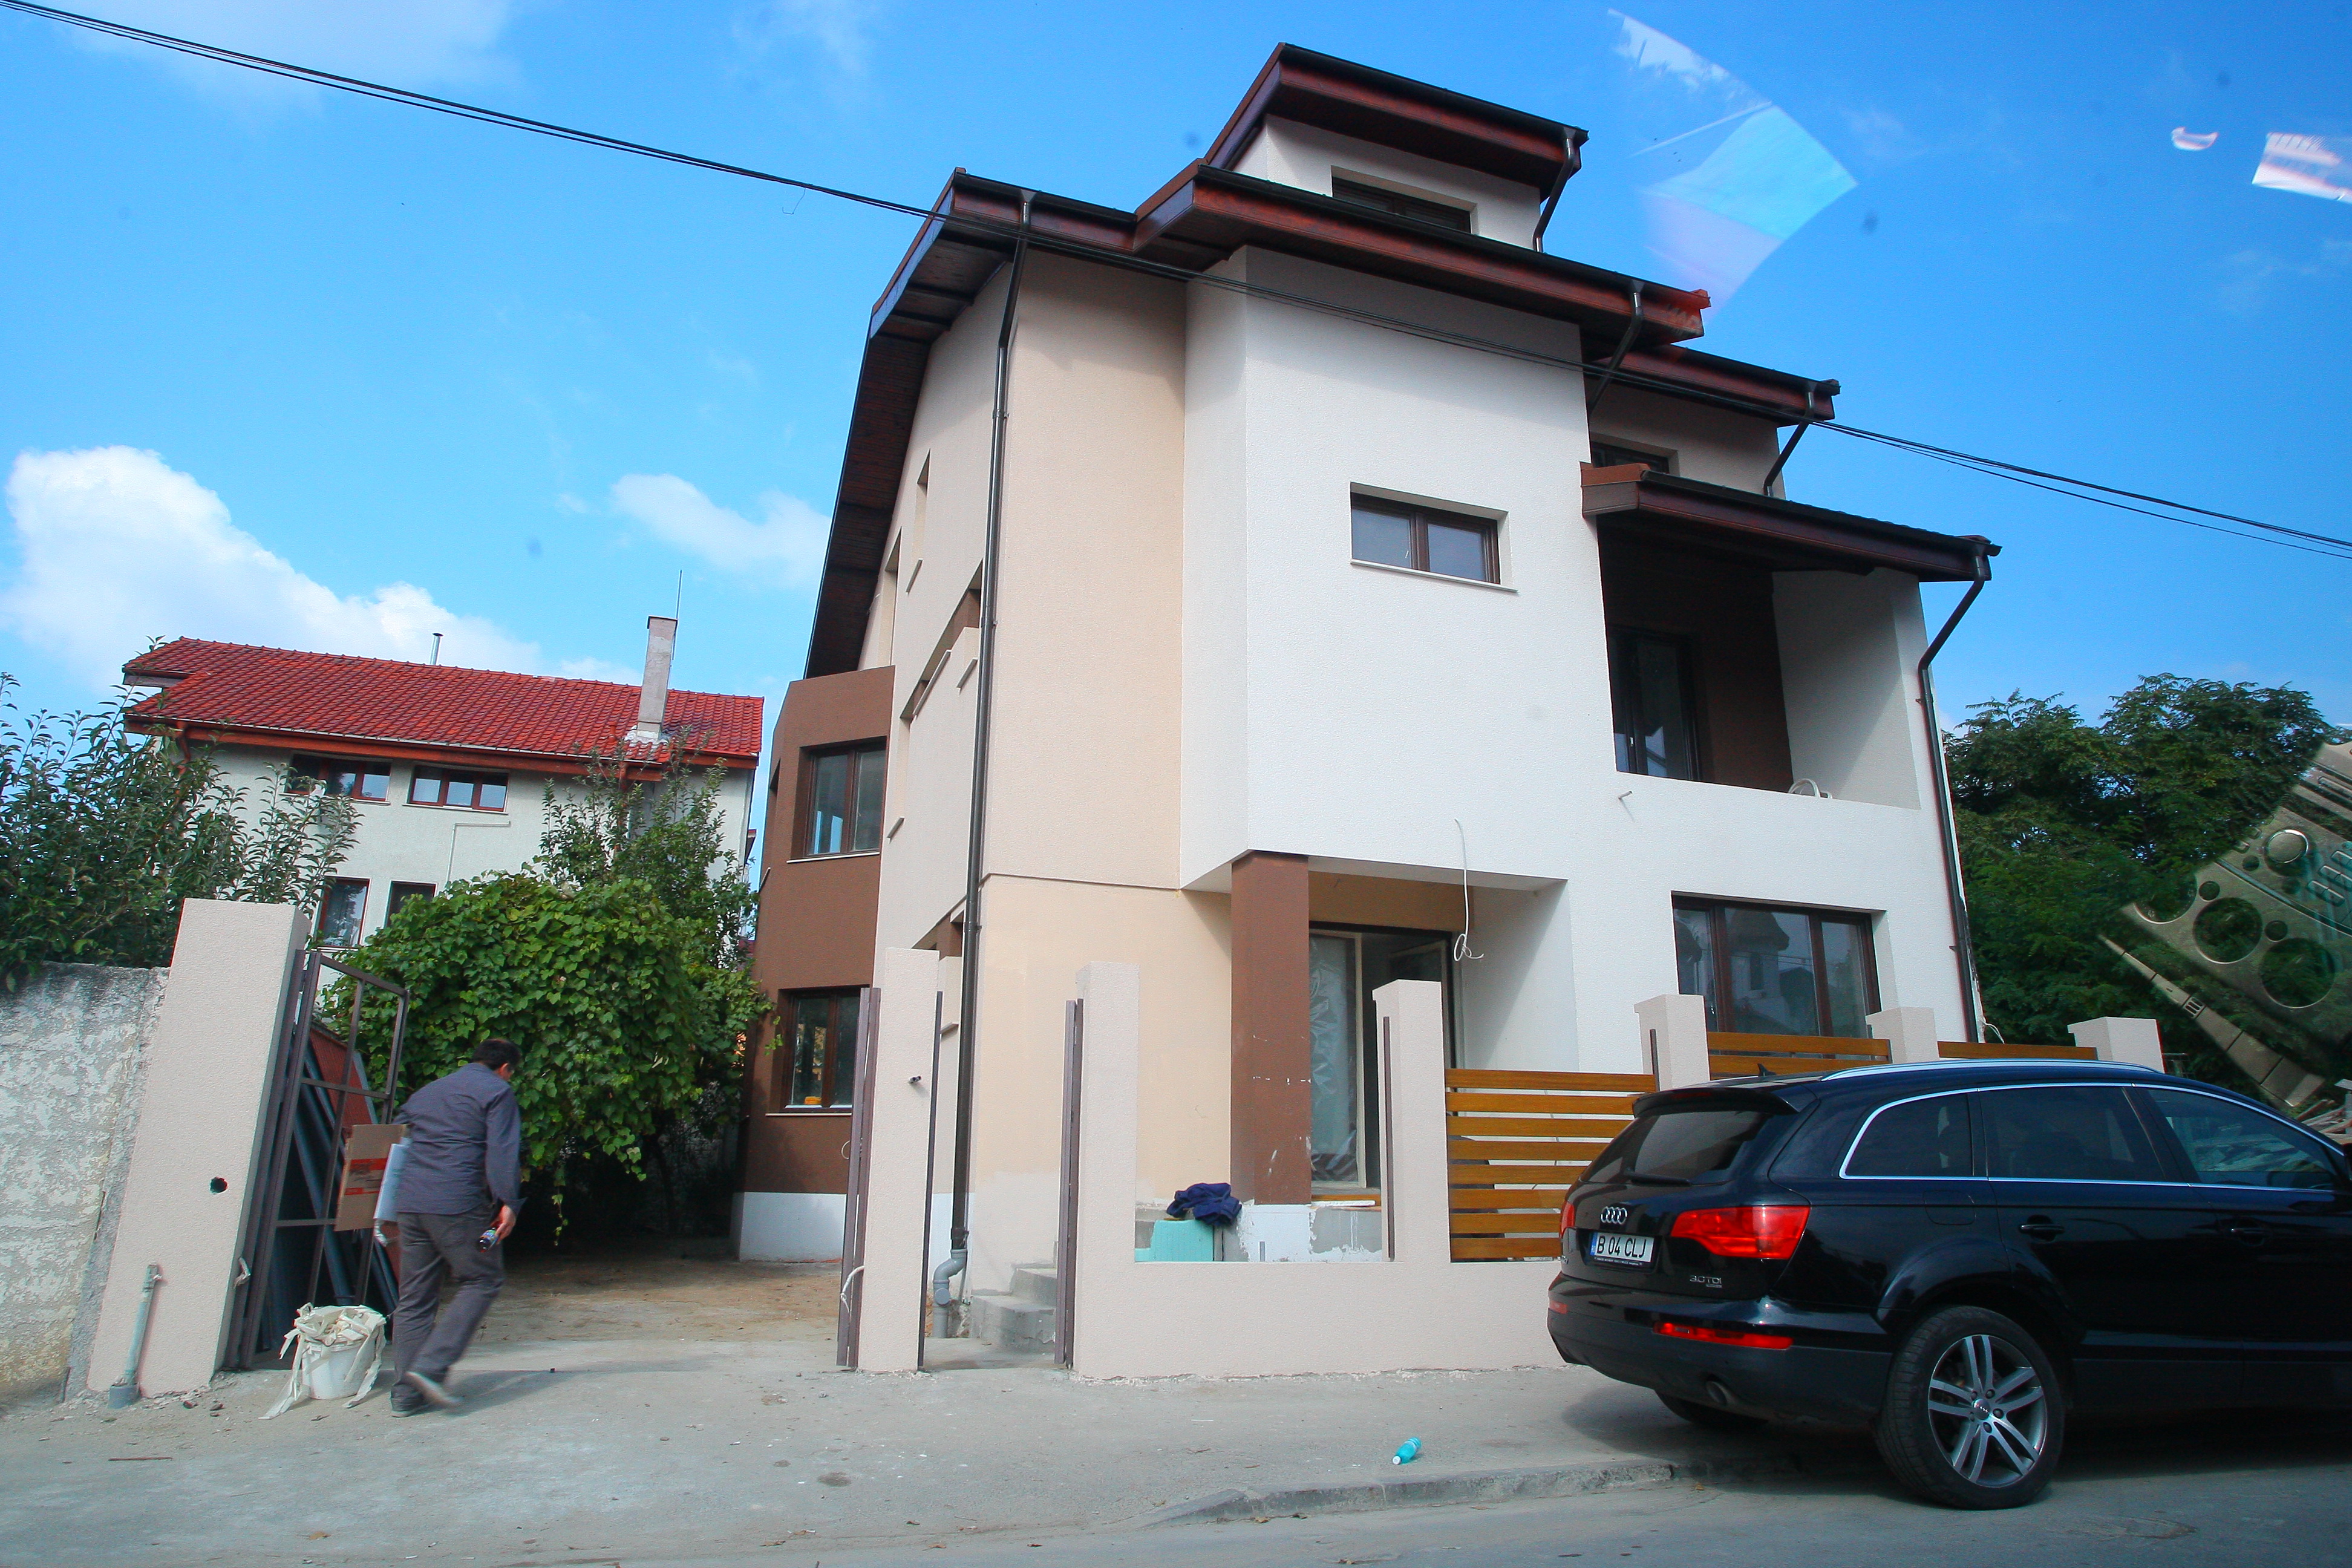 Viorica, Ionita si copiii lor s-au mutat intr-o superba vila, in Bucuresti, in urma cu doi ani